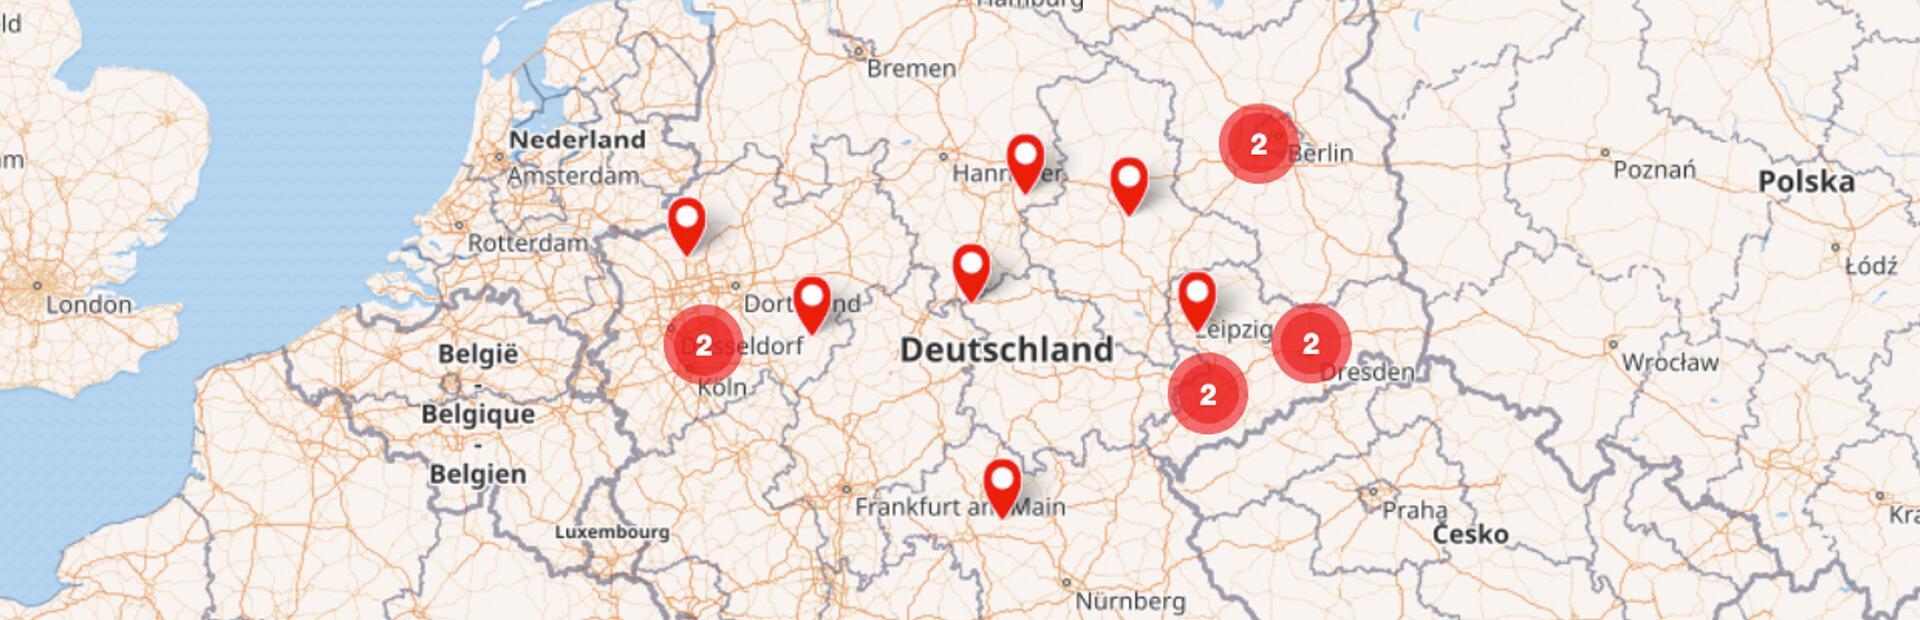 Abbildung Deutschlandkarte mit beispielhafter Kennzeichnung freier Stellen